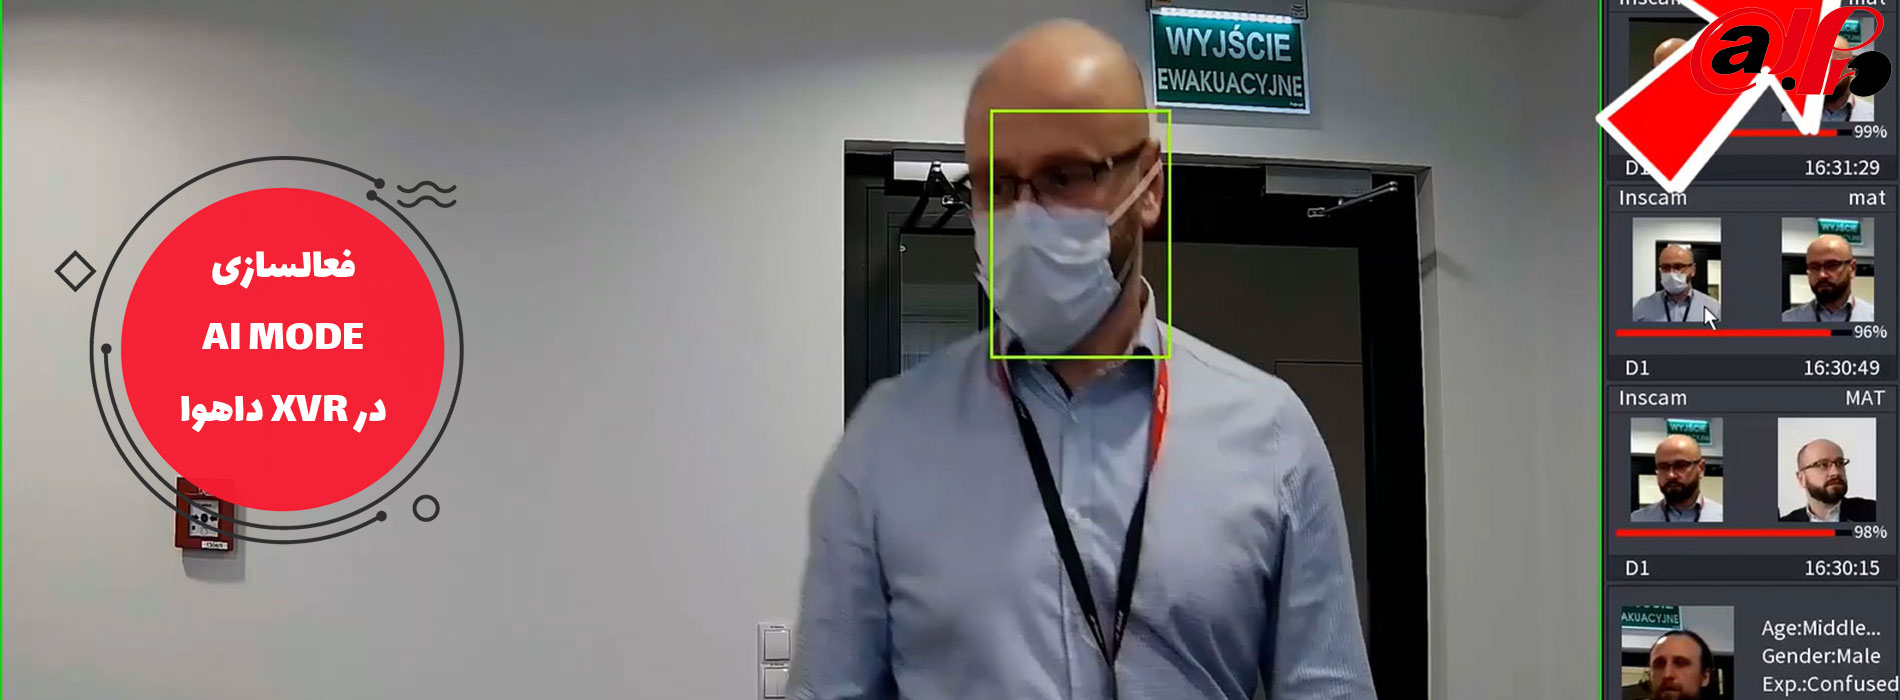 هوش مصنوعی و تشخیص چهره داهوا